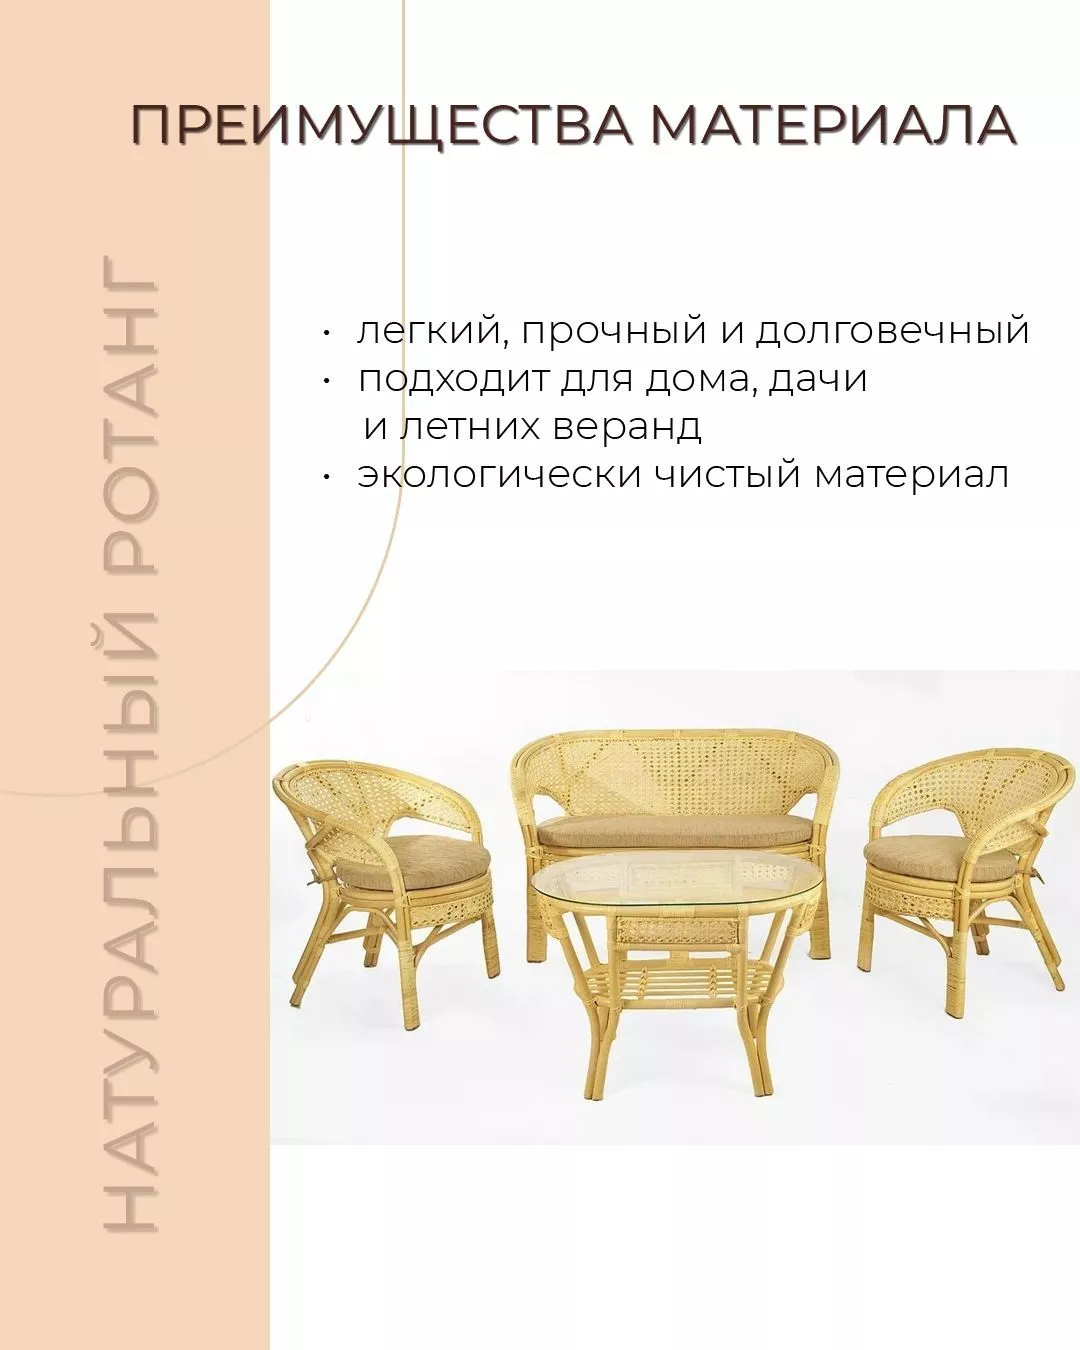 Комплект мебели из ротанга Пеланги 02 15 с 2х местным диваном и овальным столом натуральный